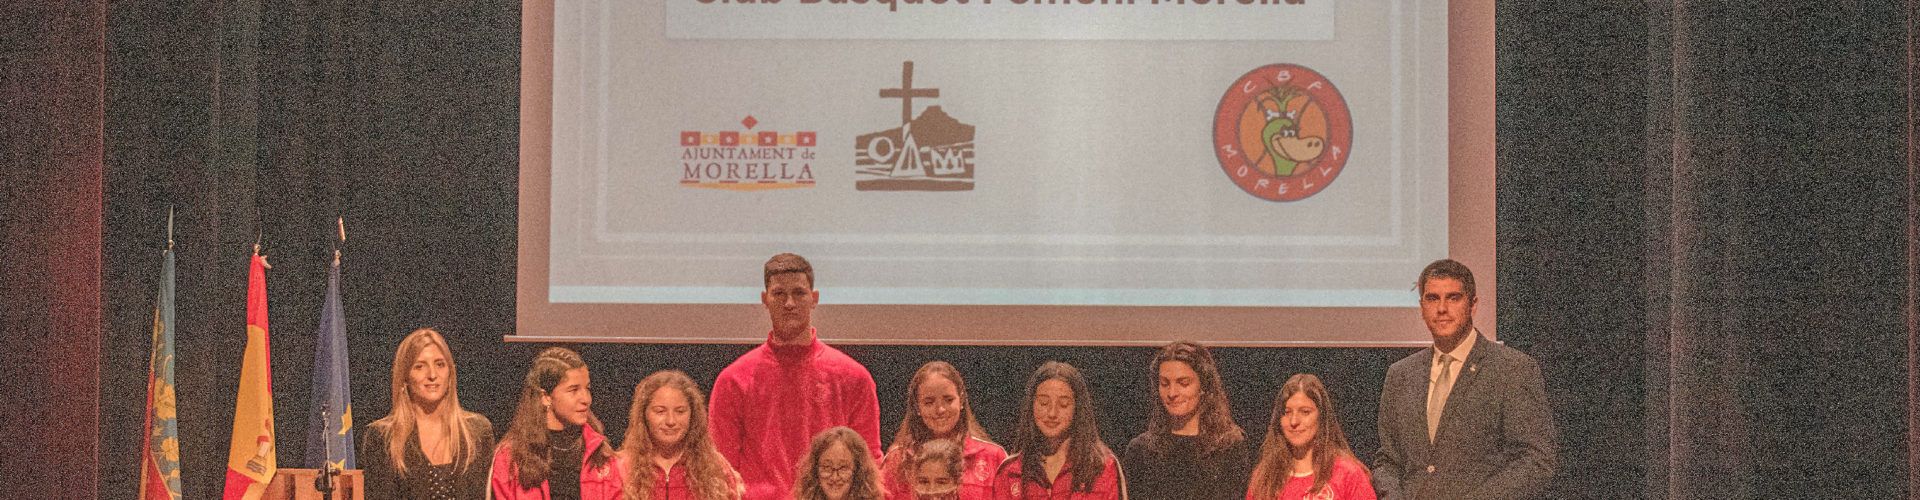 El Club de Bàsquet Femení Morella rep la Creu de Santa Llúcia